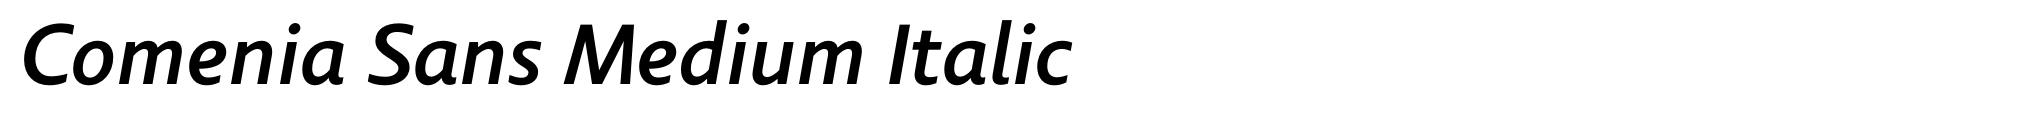 Comenia Sans Medium Italic image